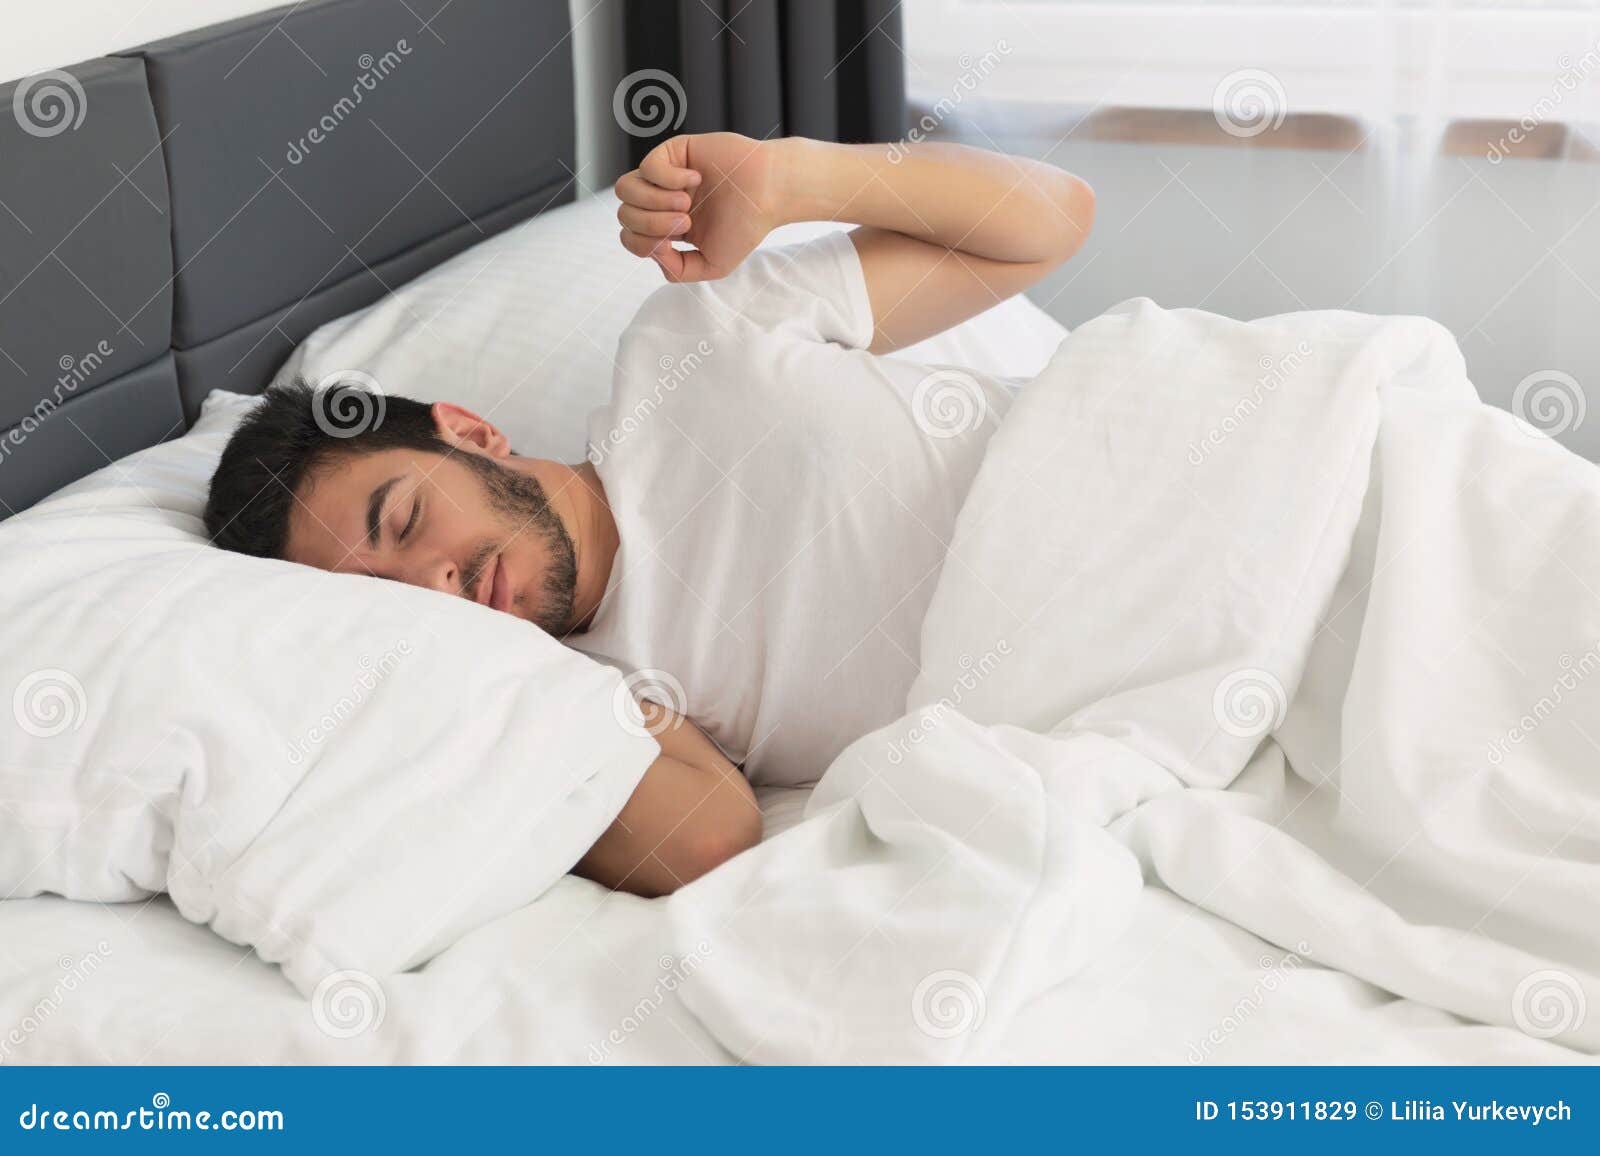 소파에 누워있는 남성은 자고있다 사진 무료 다운로드 - Lovepik